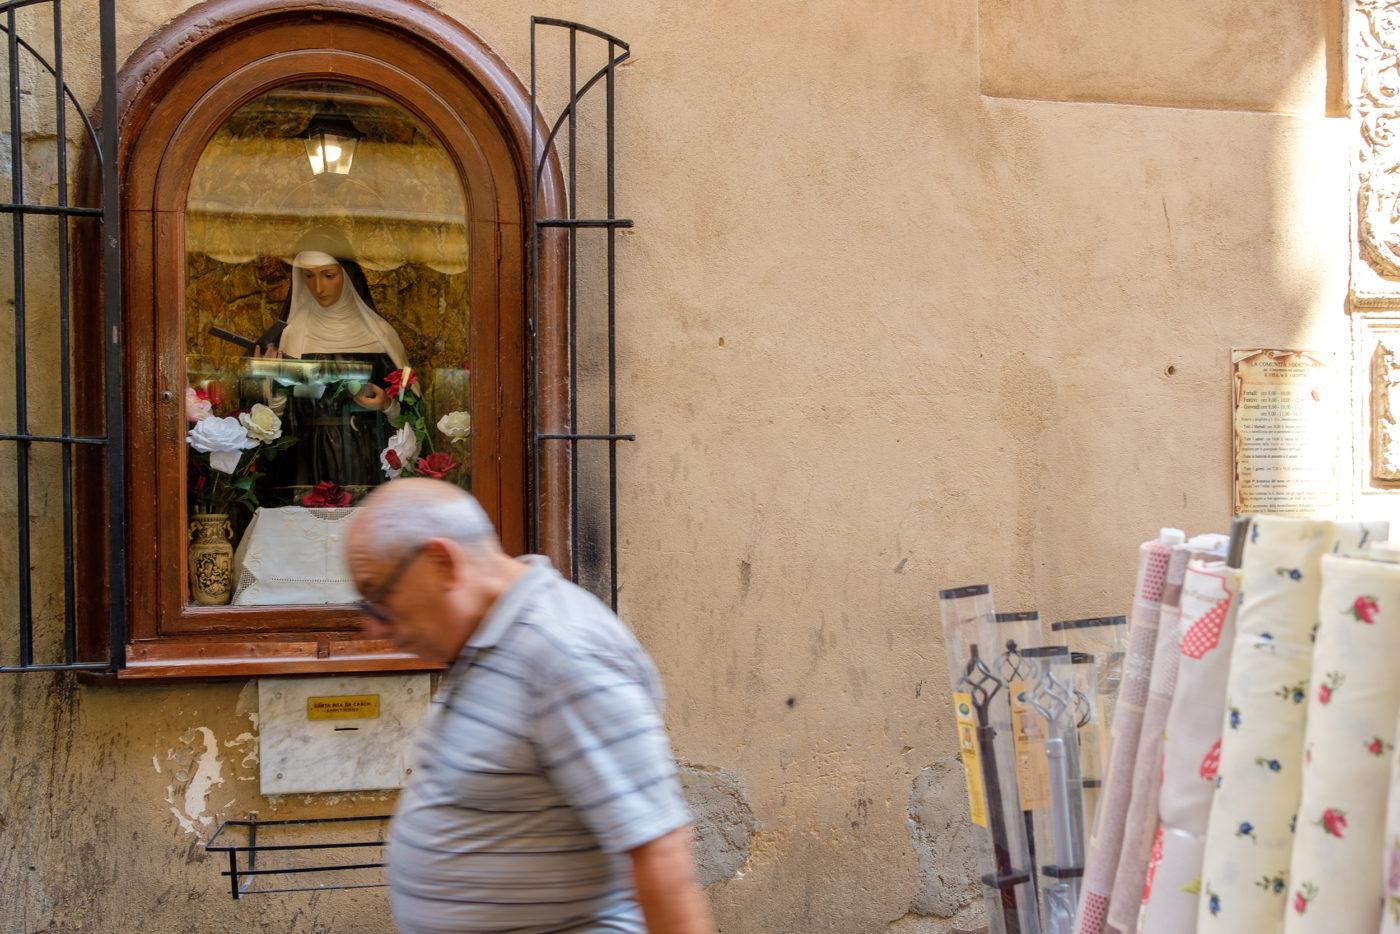 Saint Rita of Cascia in Palermo, Sicily.